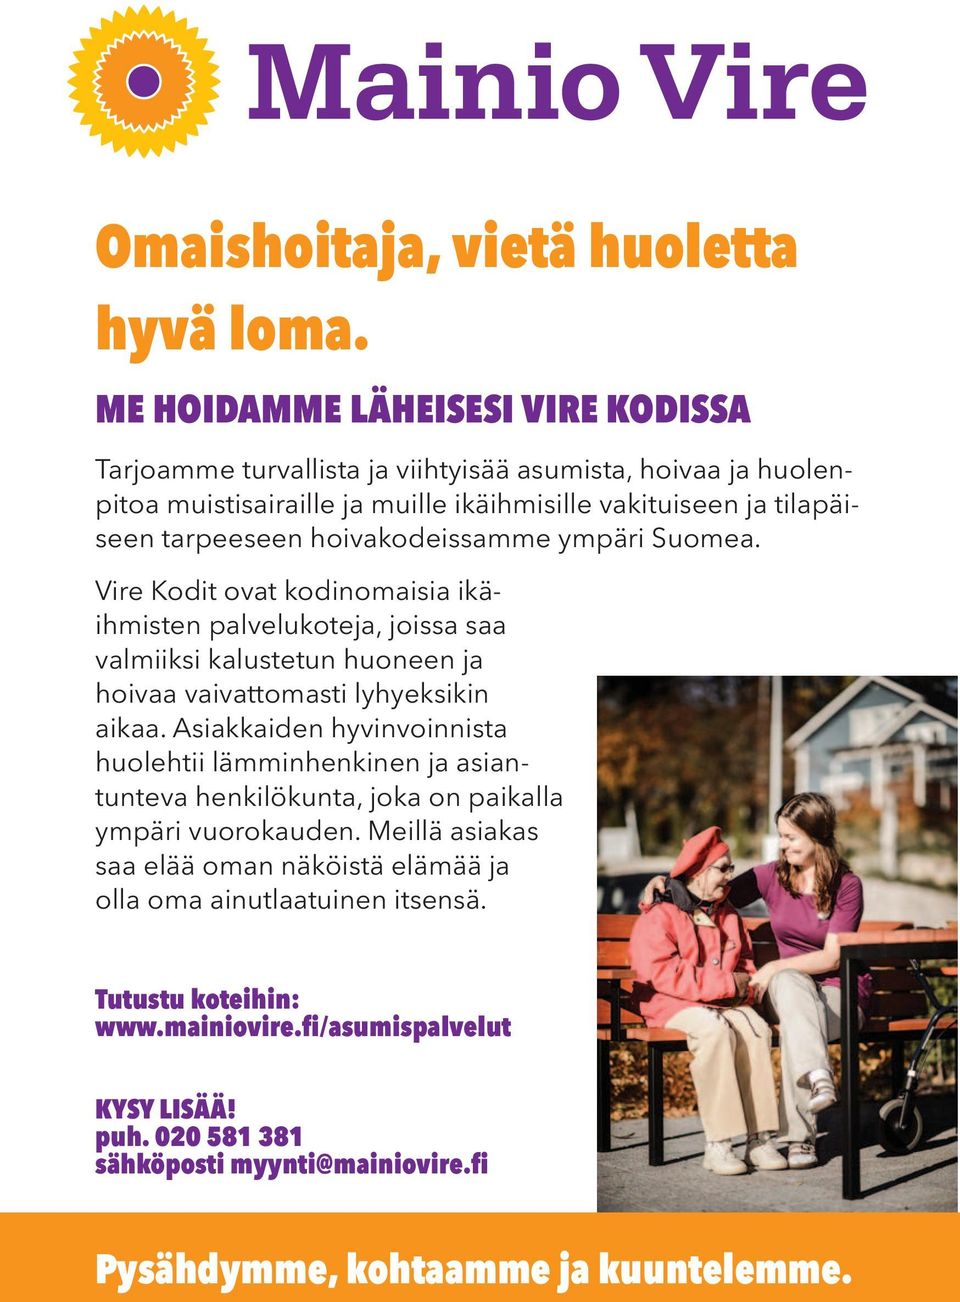 hoivakodeissamme ympäri Suomea. Vire Kodit ovat kodinomaisia ikäihmisten palvelukoteja, joissa saa valmiiksi kalustetun huoneen ja hoivaa vaivattomasti lyhyeksikin aikaa.